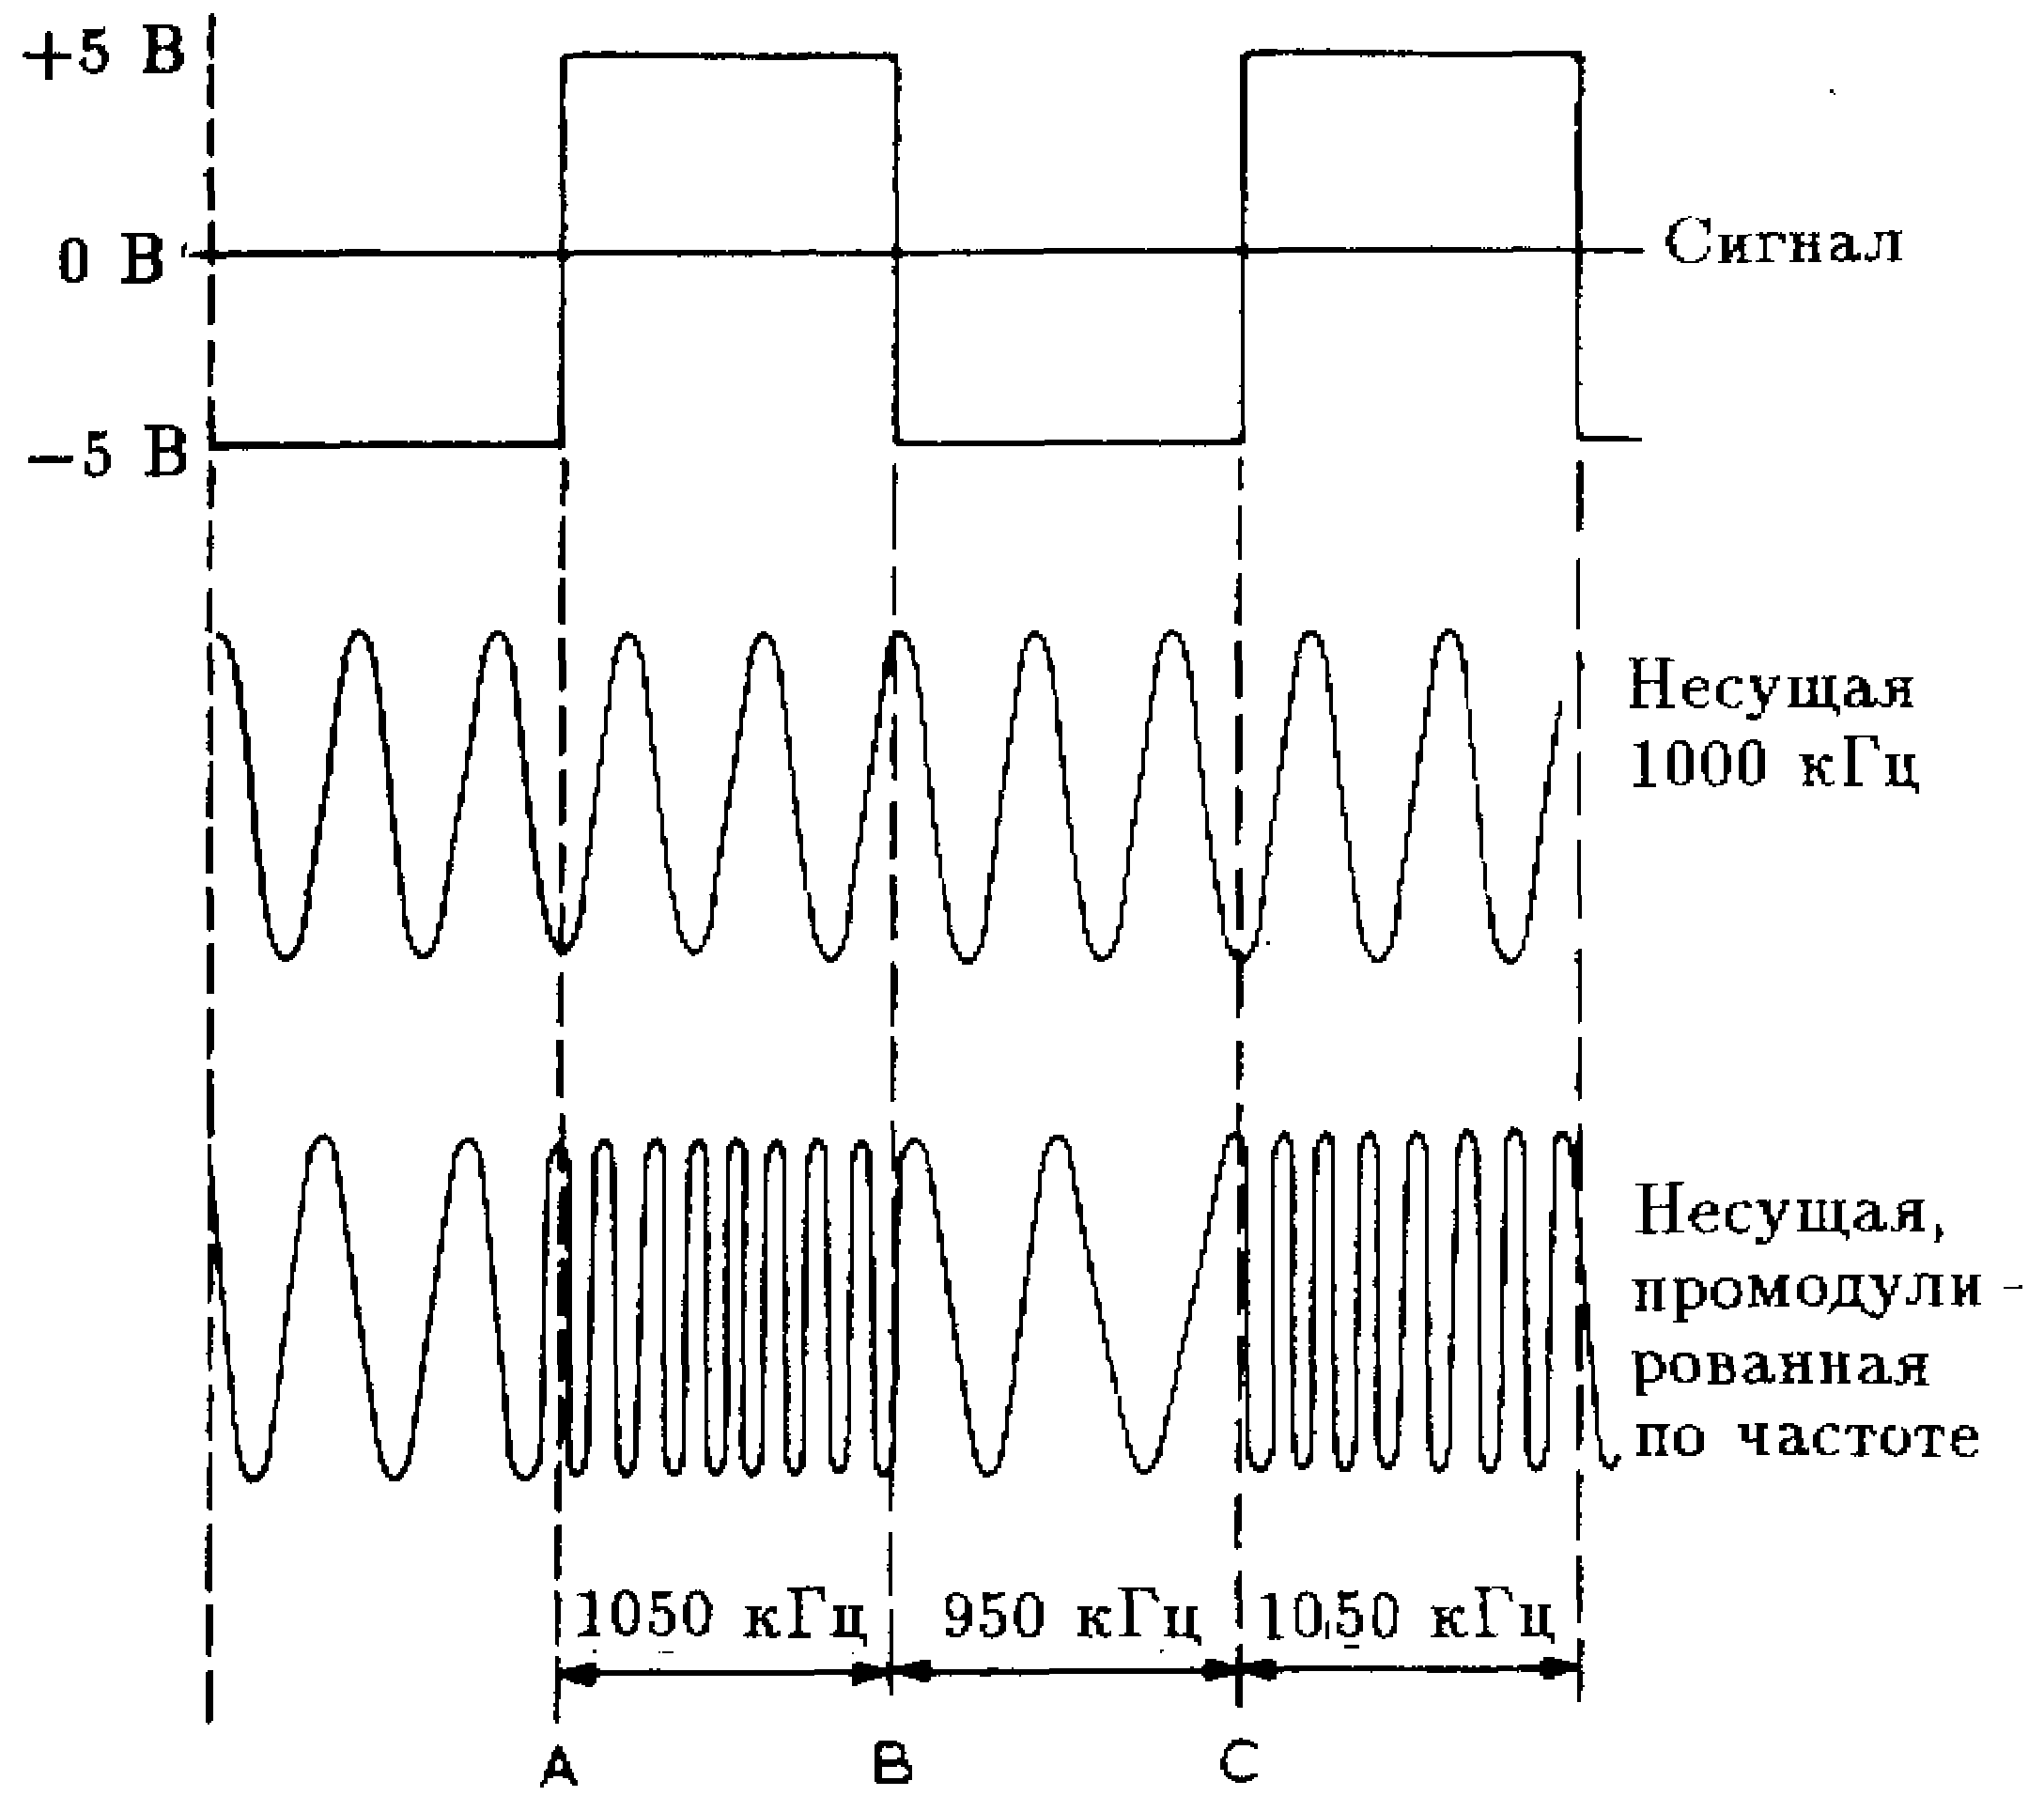 Частотная модуляция девиация частоты. Спектры радиосигналов с амплитудной модуляцией. Что такое девиация частотно модулированного сигнала. Частота модулирующего сигнала. Какая частота называется несущей